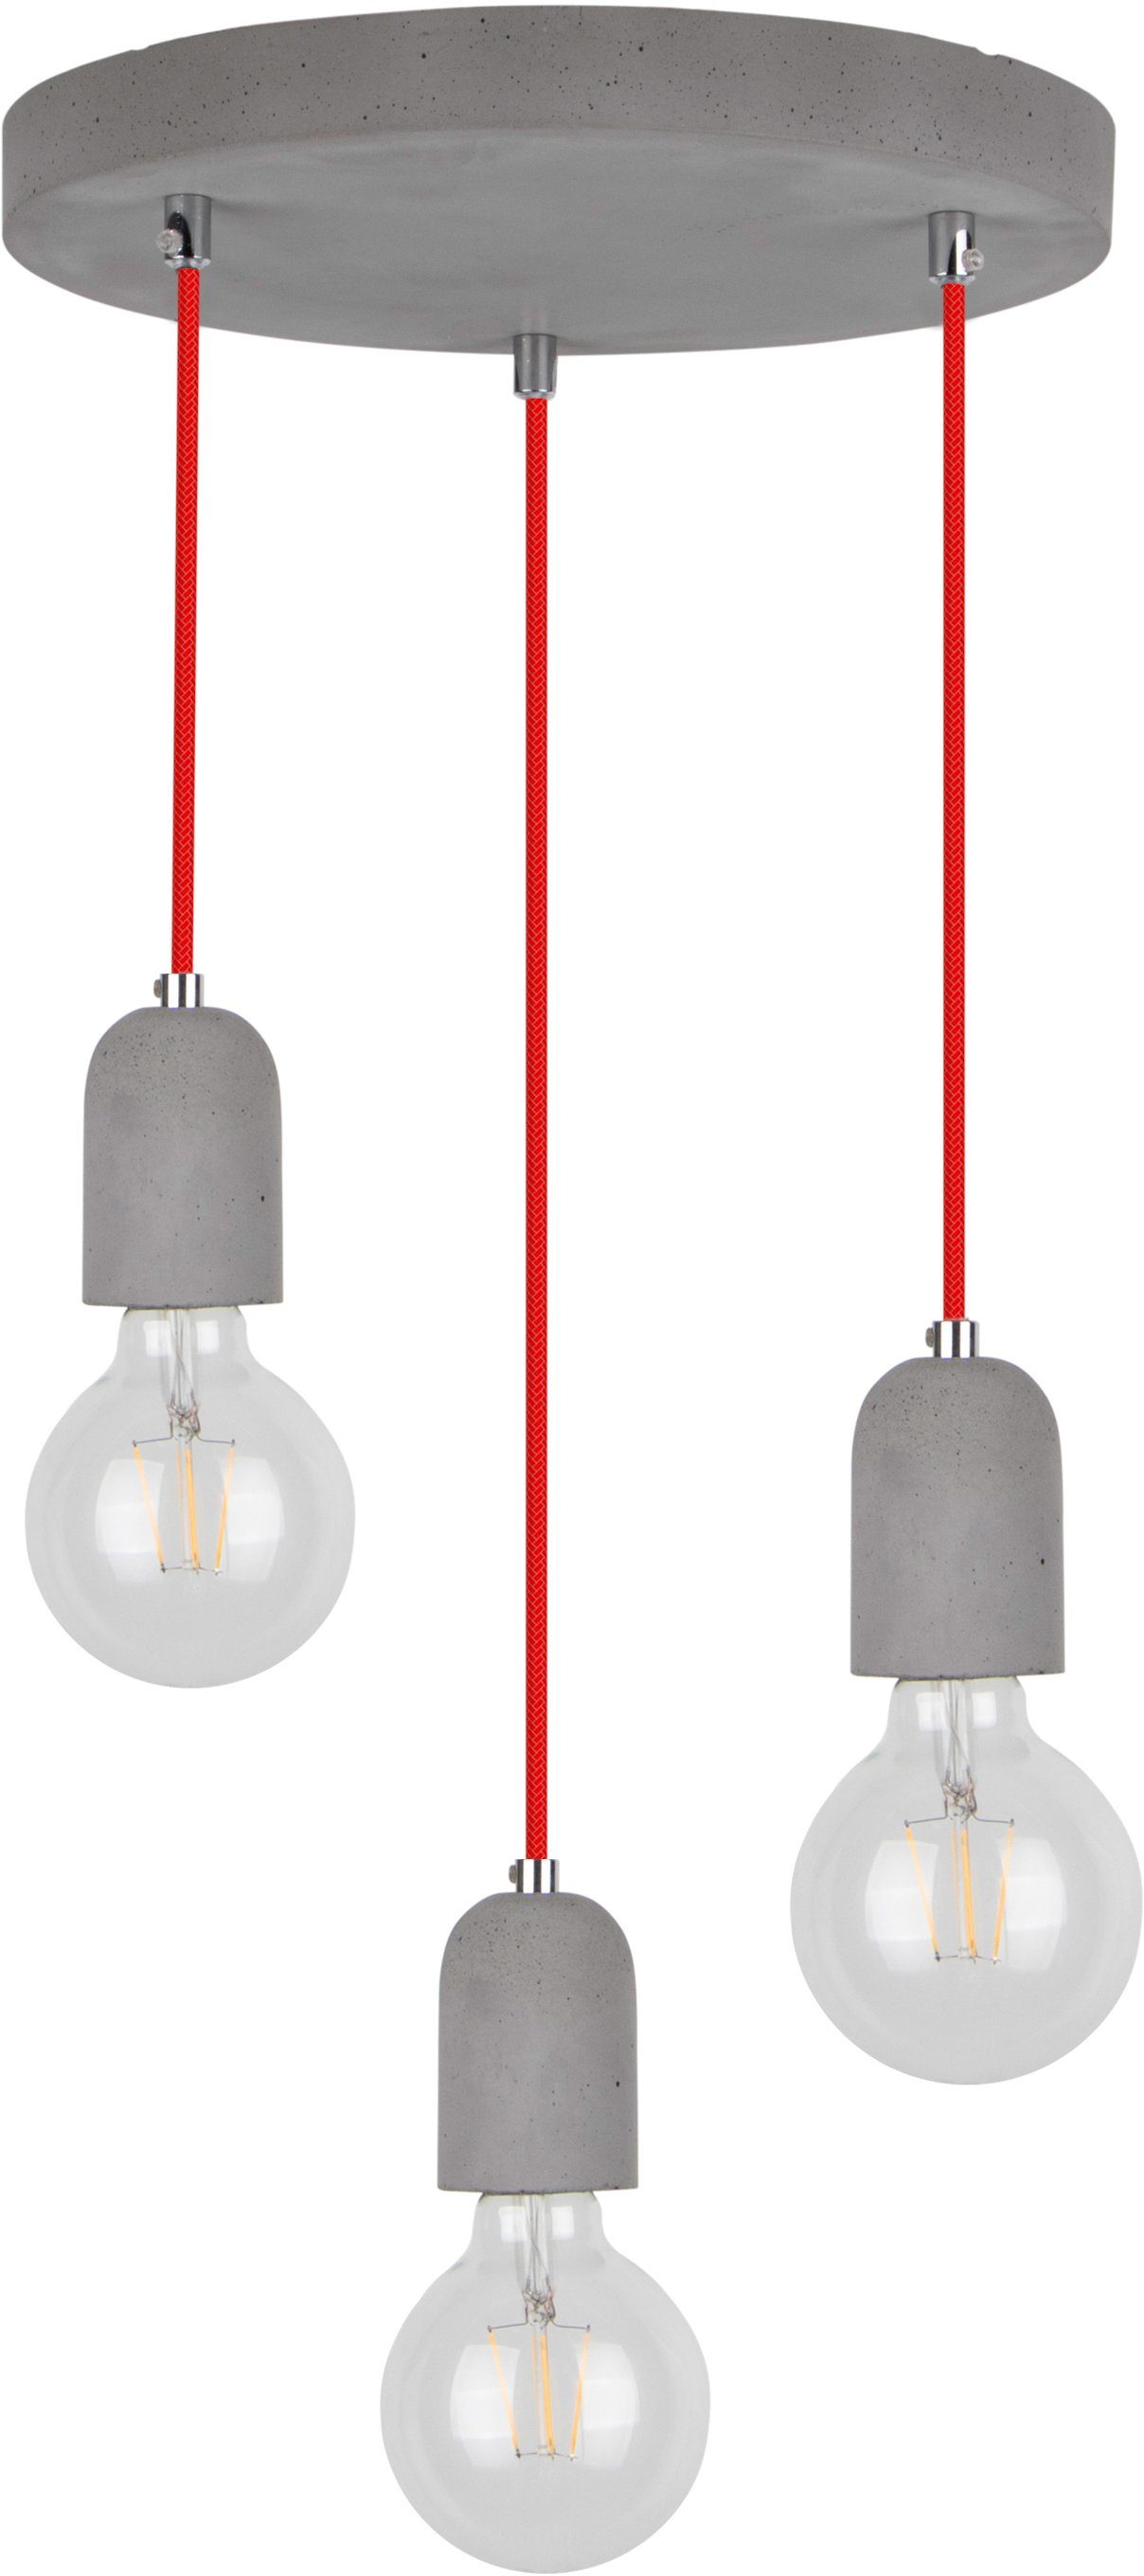 spot light hanglamp amory hanglamp, beton, kabel in rood, ideaal voor vintage lampen (1 stuk) grijs